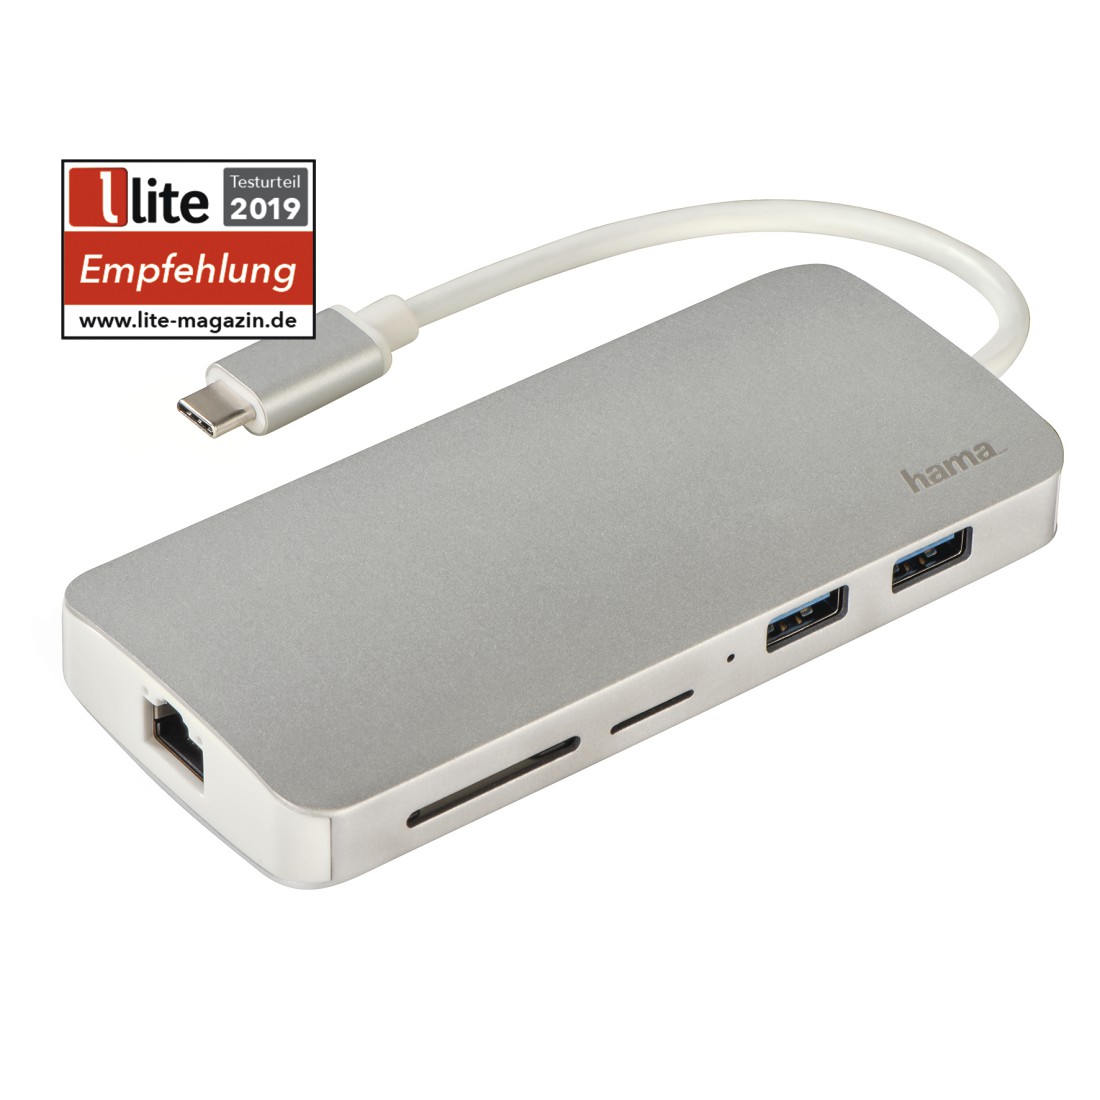 00135760 Hama 7-in-1 USB-C Docking Station for 2x USB 3.1, HDMI™, LAN, SD,  microSD, USB-C | hama.com